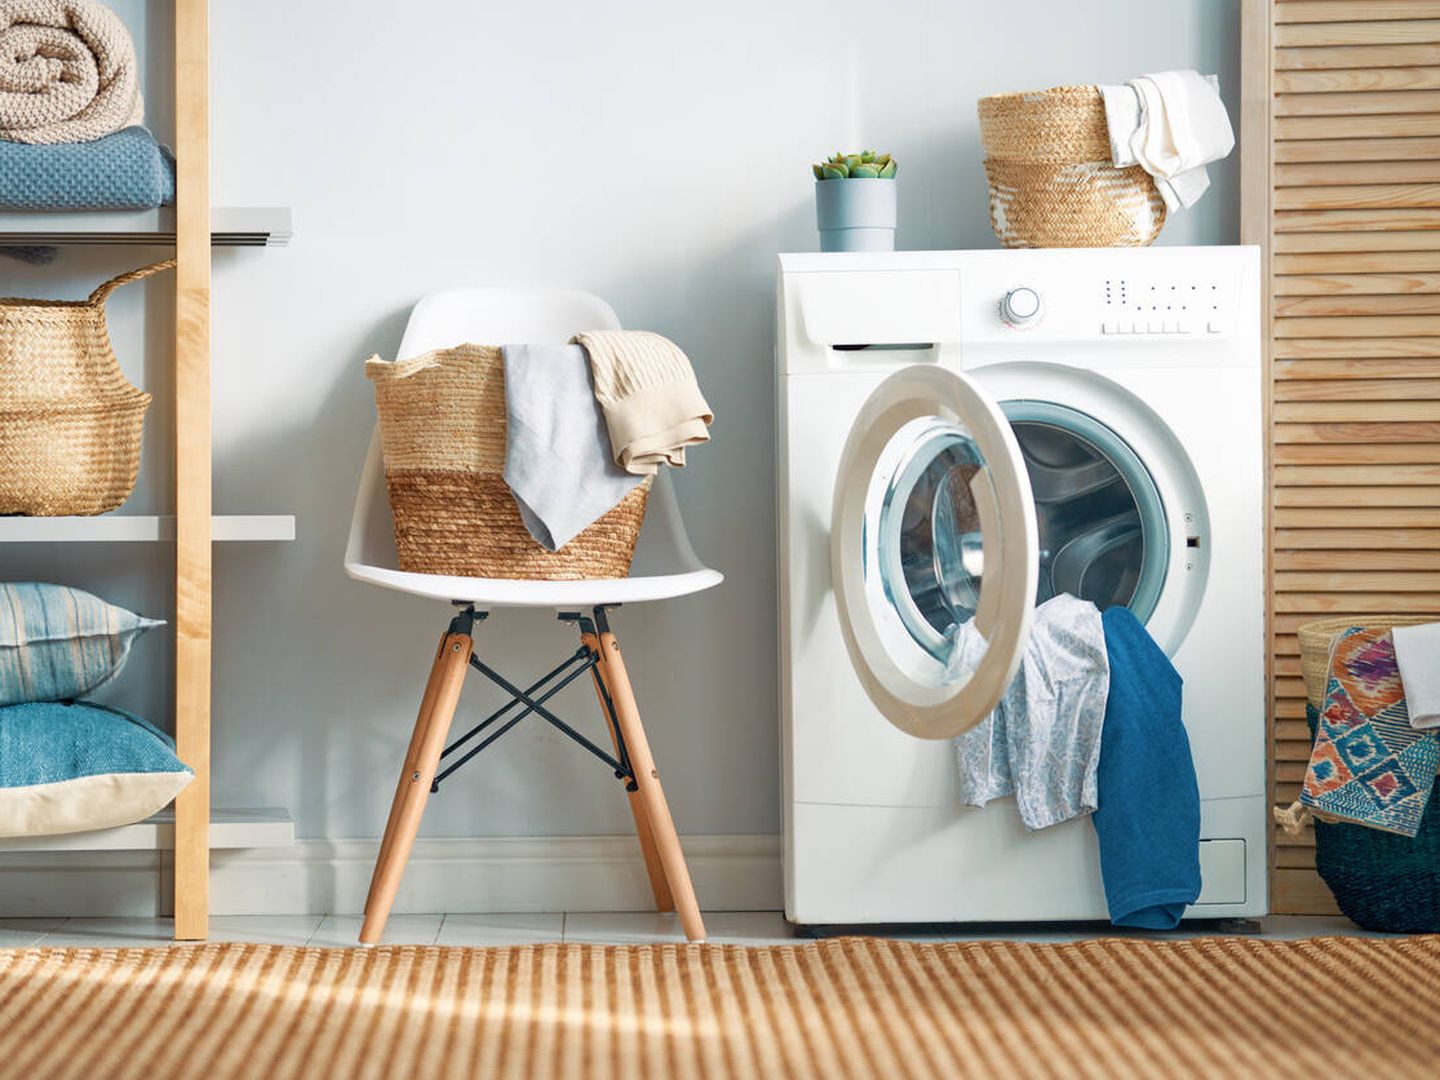 Las lavadoras en el extranjero están en el baño o en zonas comunitarias (iStock)